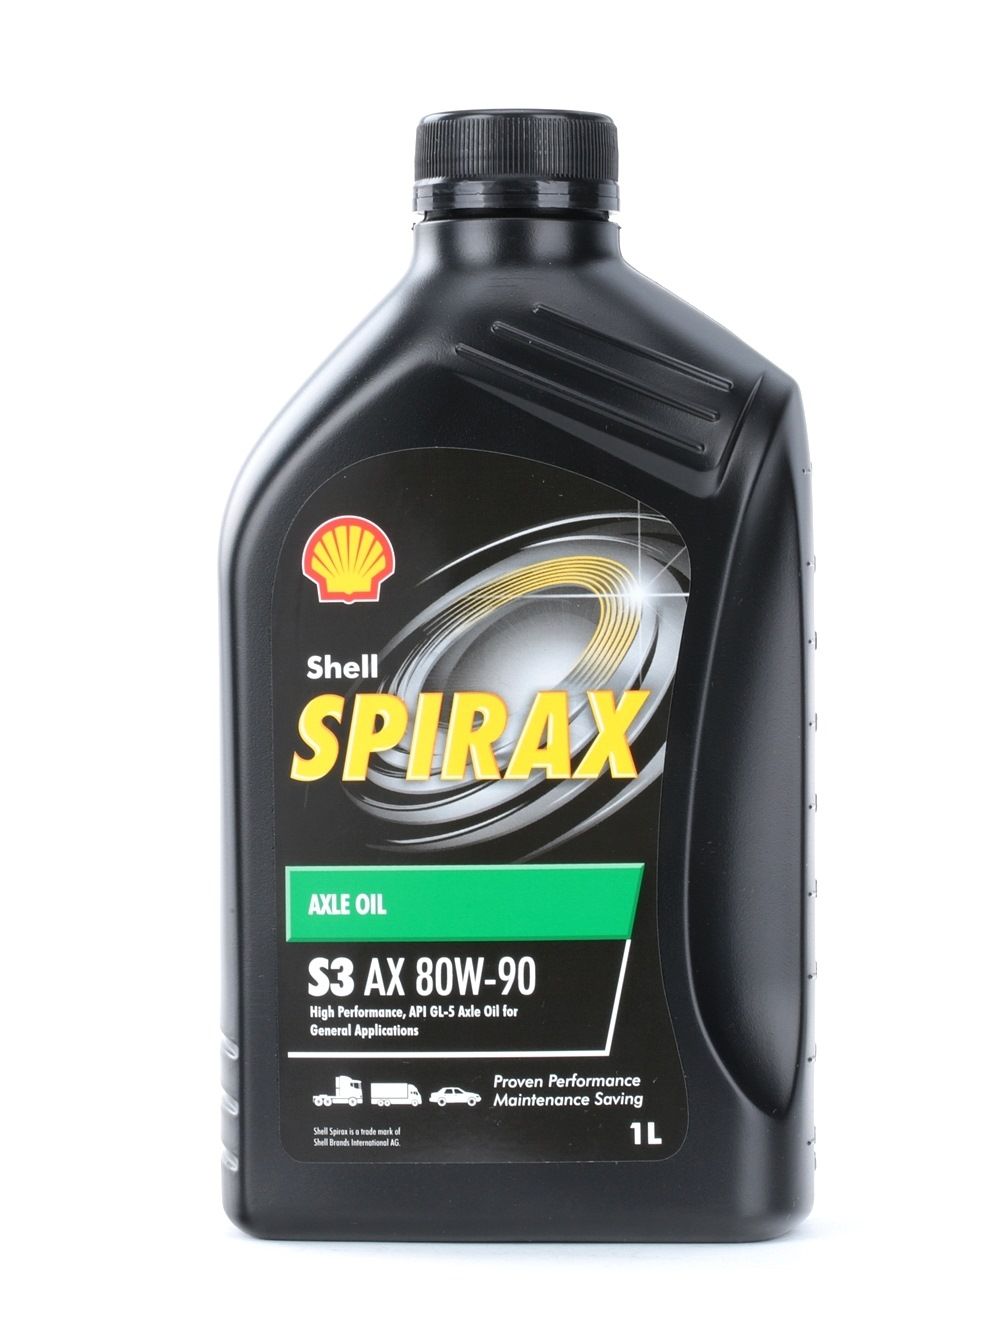 Getriebeol Shell Spirax S3 Axme 80w 90 Inhalt 1l Mineralolhaltig Jetzt Kaufen